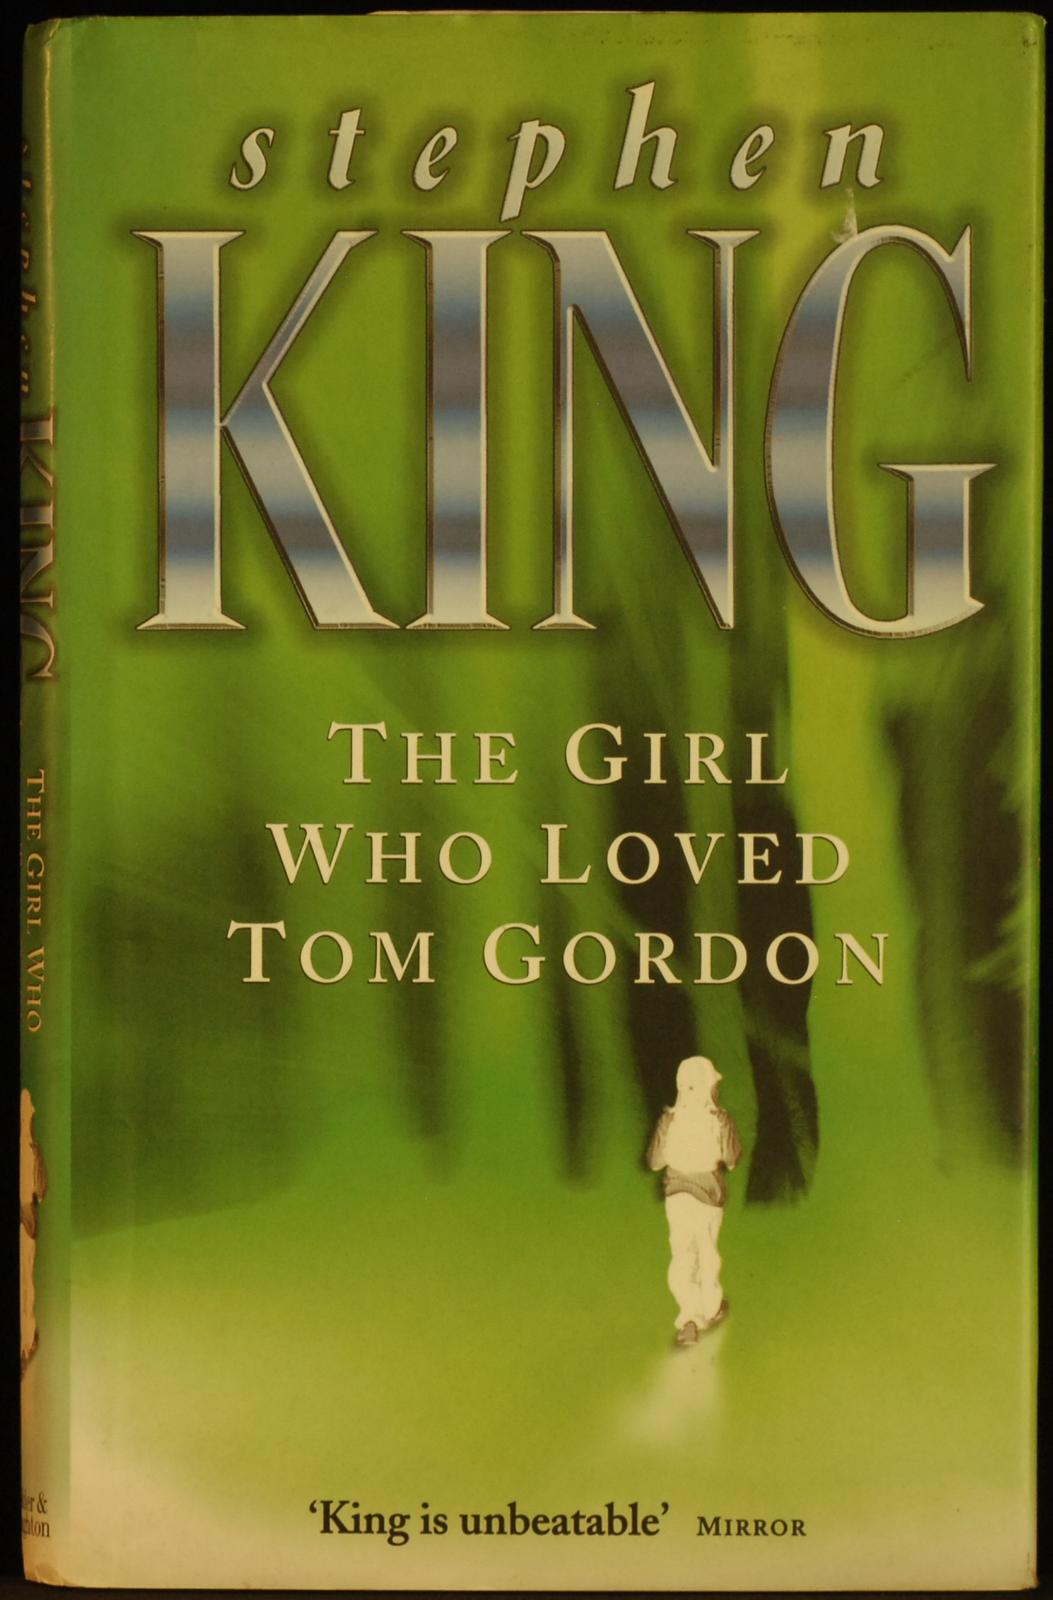 mbb006521b_-_King_Stephen_-_The_Girl_Who_Loved_Tom_Gordon.jpg